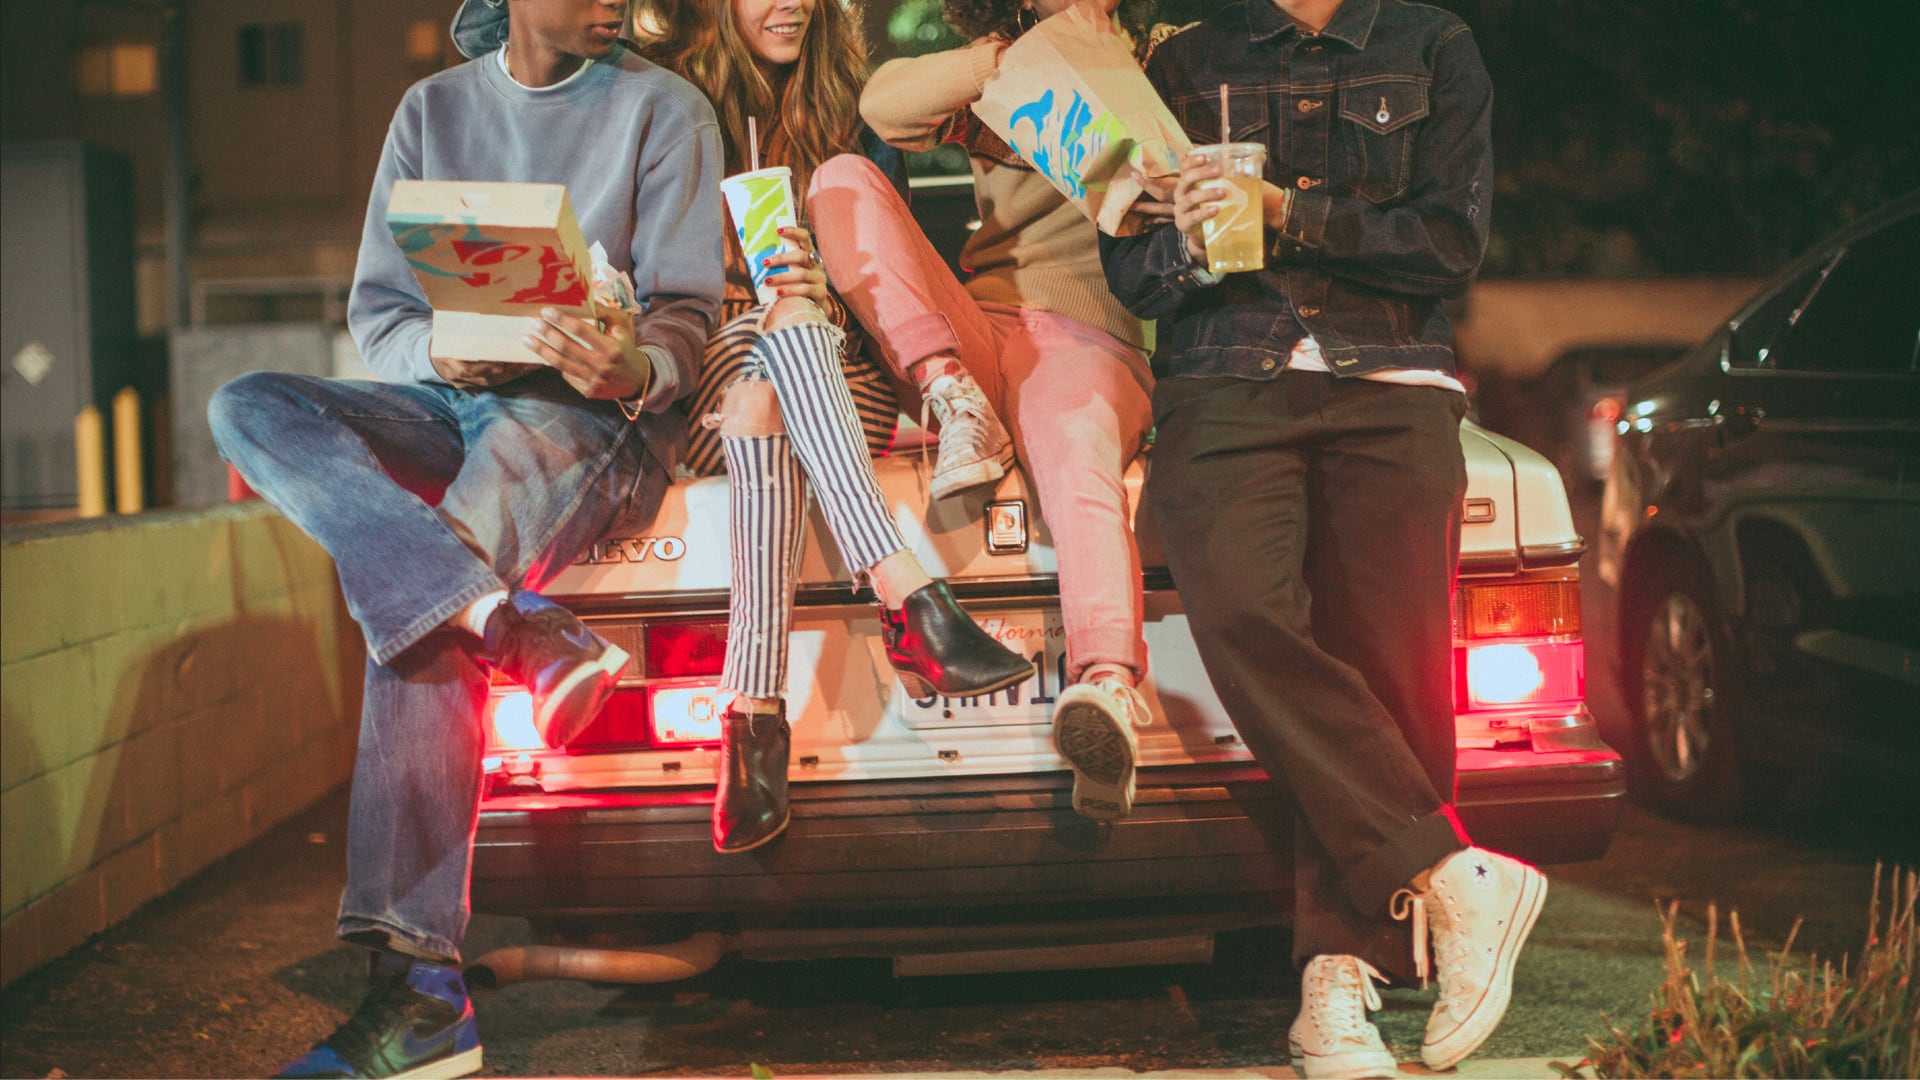 Trois jeunes s'appuient contre le coffre d'une voiture en mangeant de la nourriture Taco Bell.